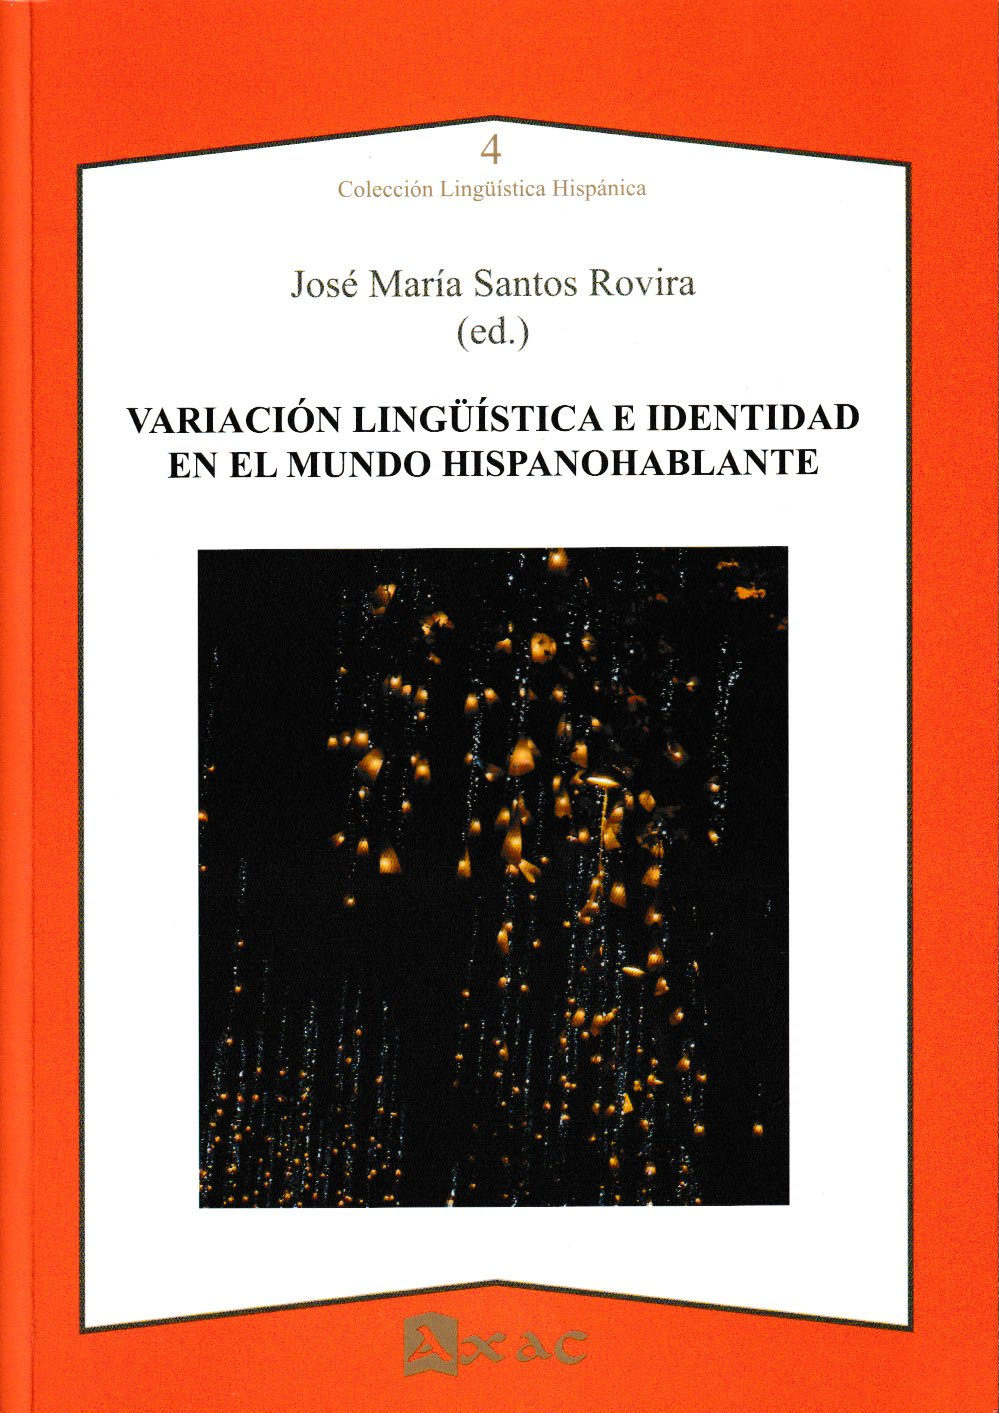 Imagen de portada del libro Variación lingüística e identidad en el mundo hispanohablante